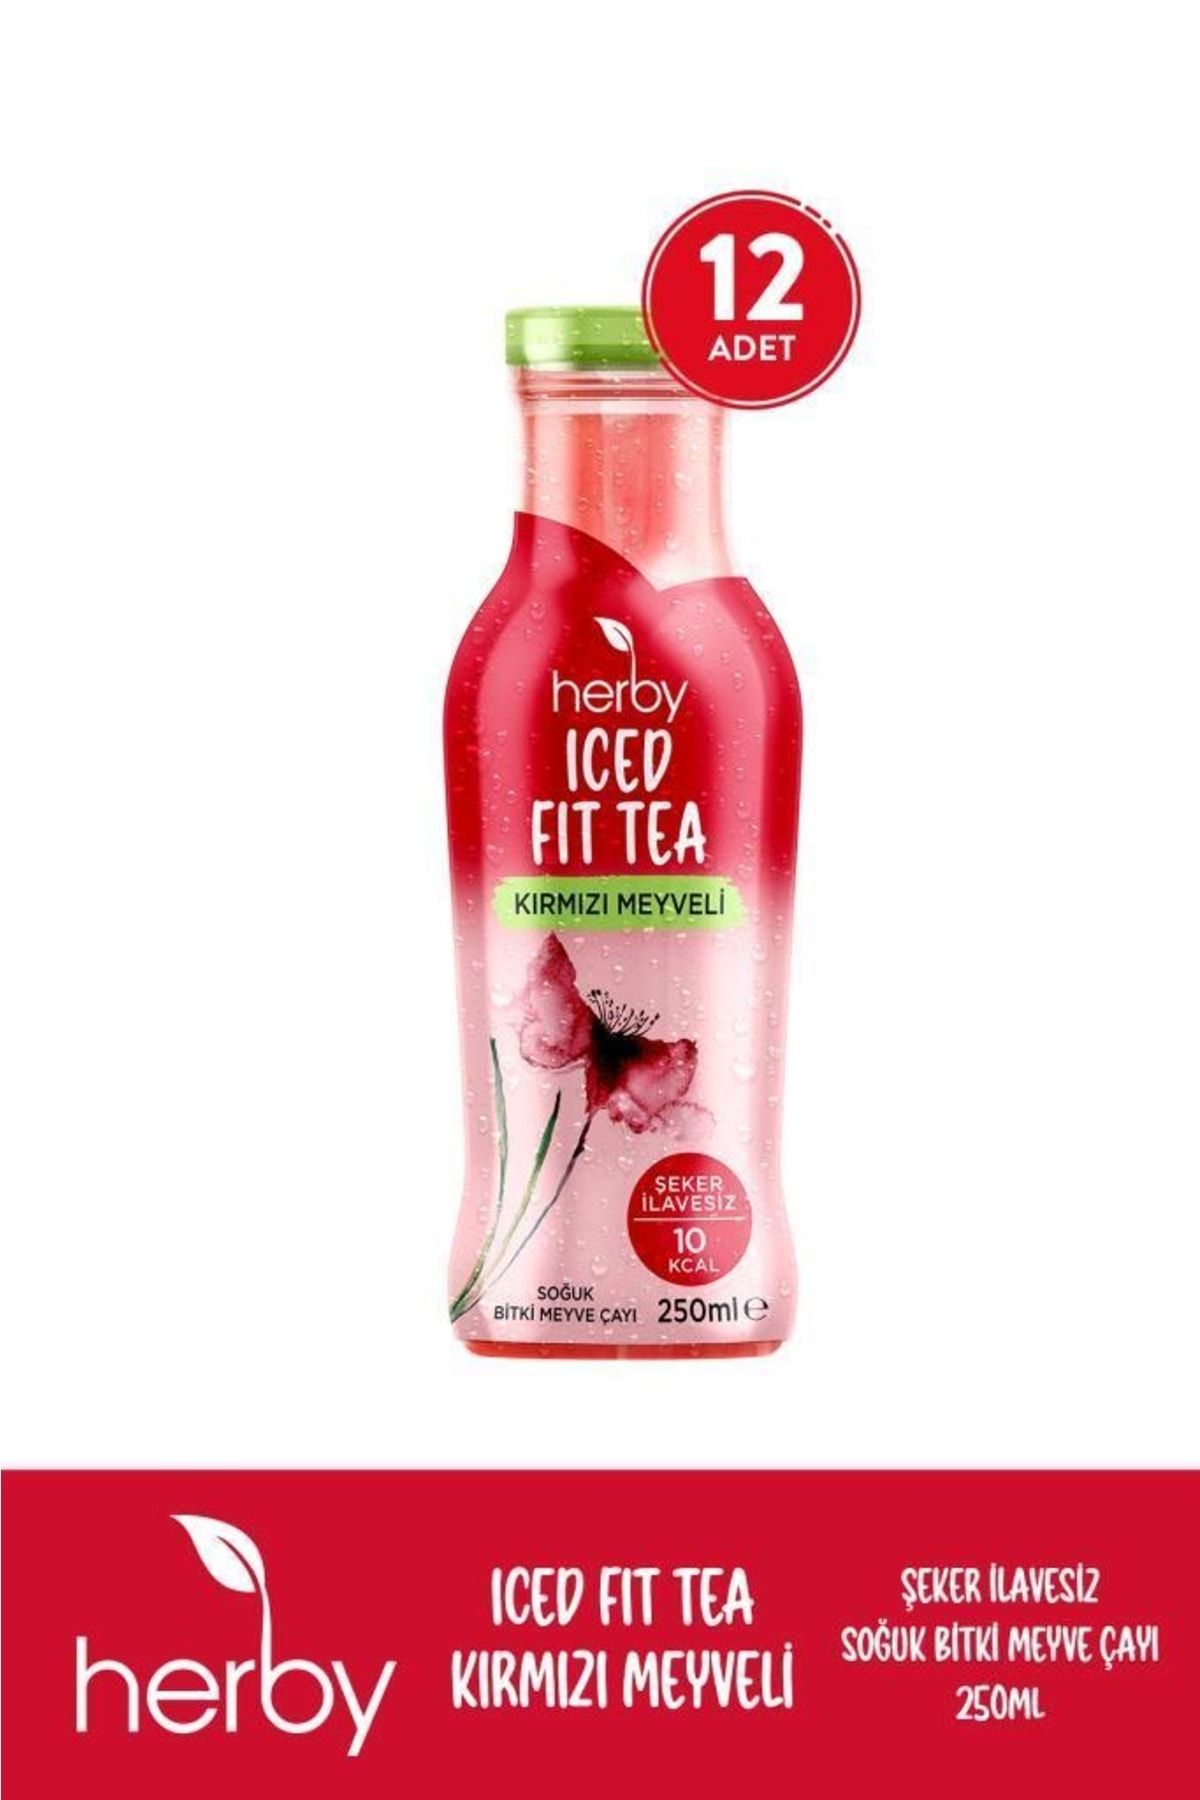 Herby Soğuk Çay Şeker Ilavesiz 12'li Iced Fit Tea Kırmızı Meyveli 250 ml